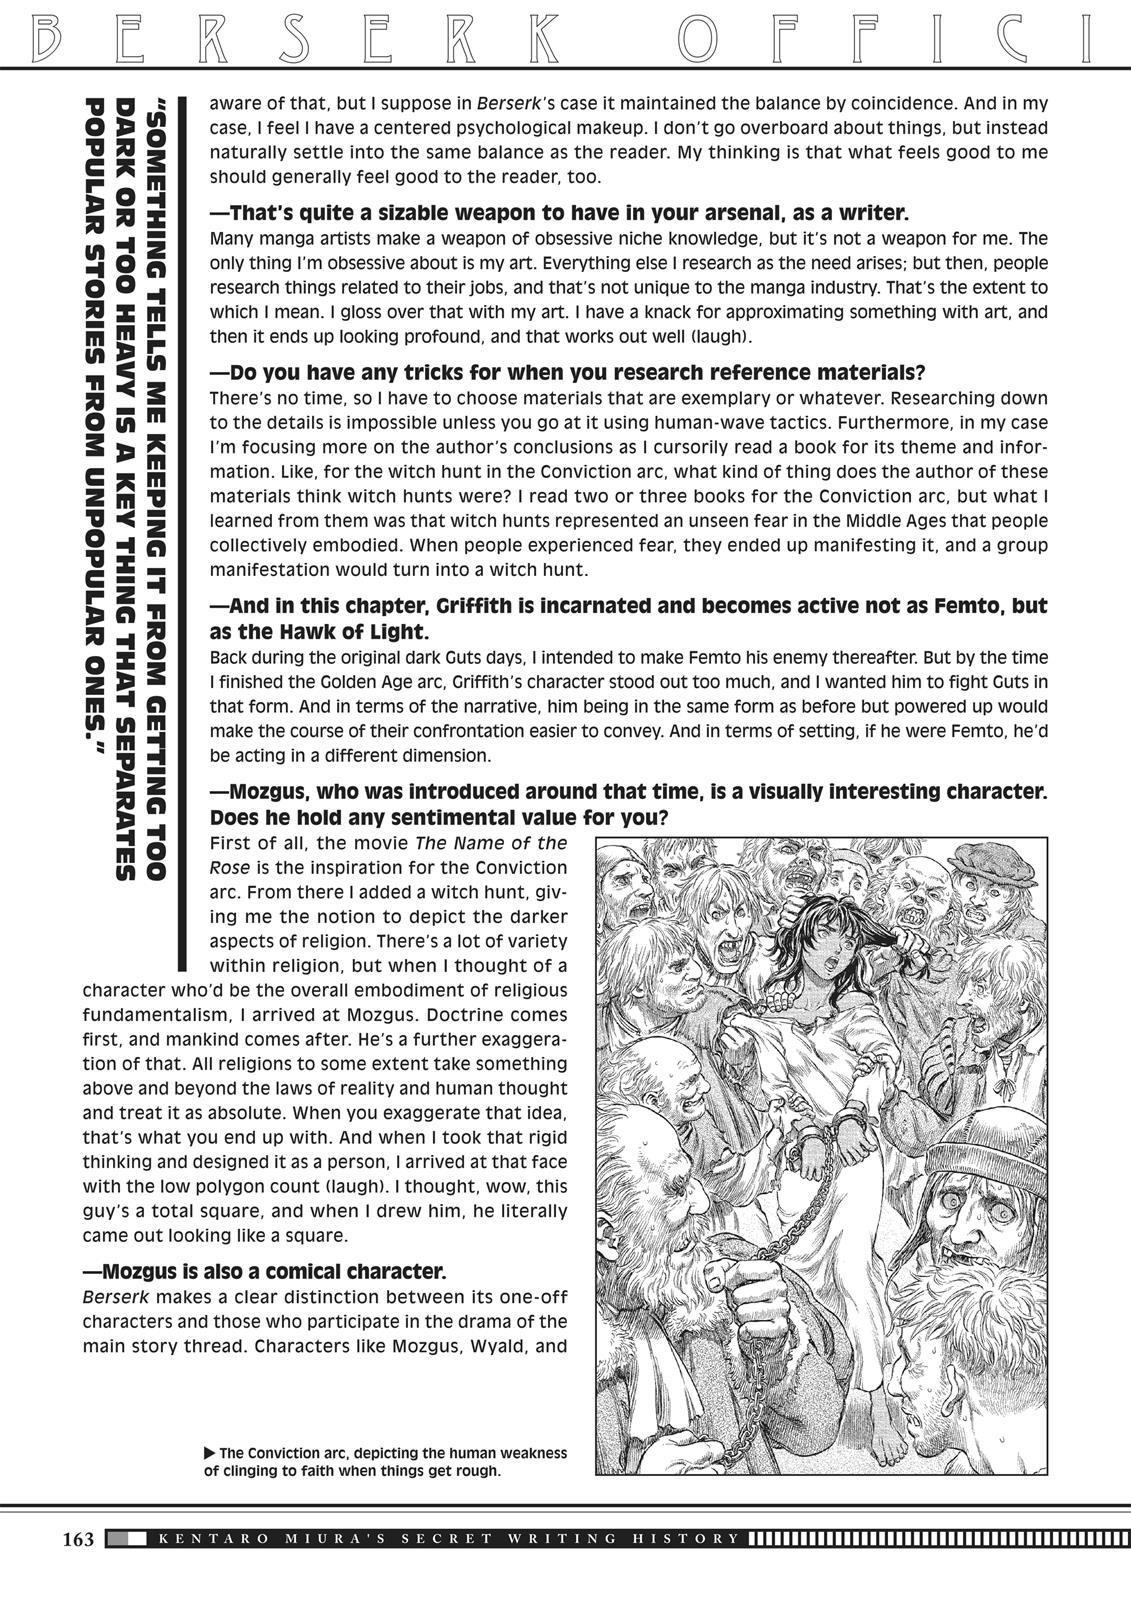 Berserk Manga Chapter 350.5 image 160